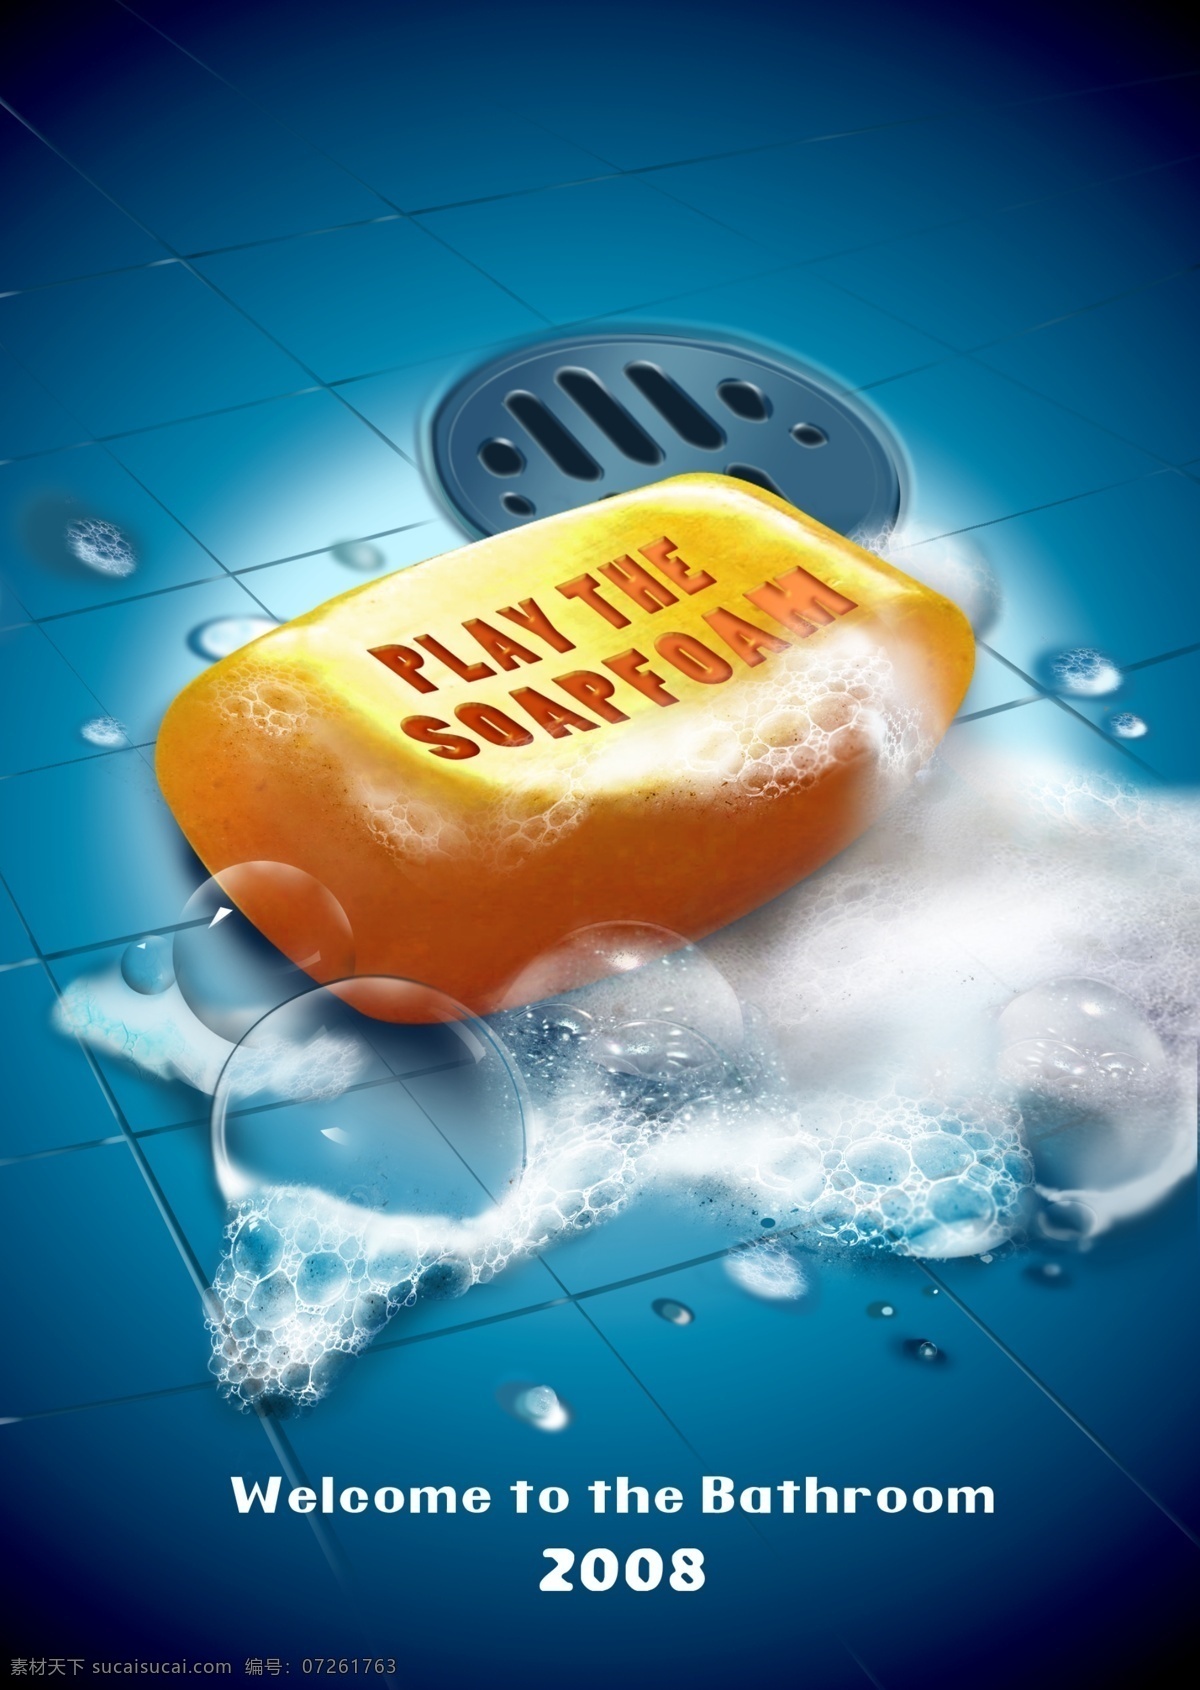 肥皂海报 肥皂 泡沫 浴室 水滴 海报 2008 肥皂品牌 广告设计模板 源文件